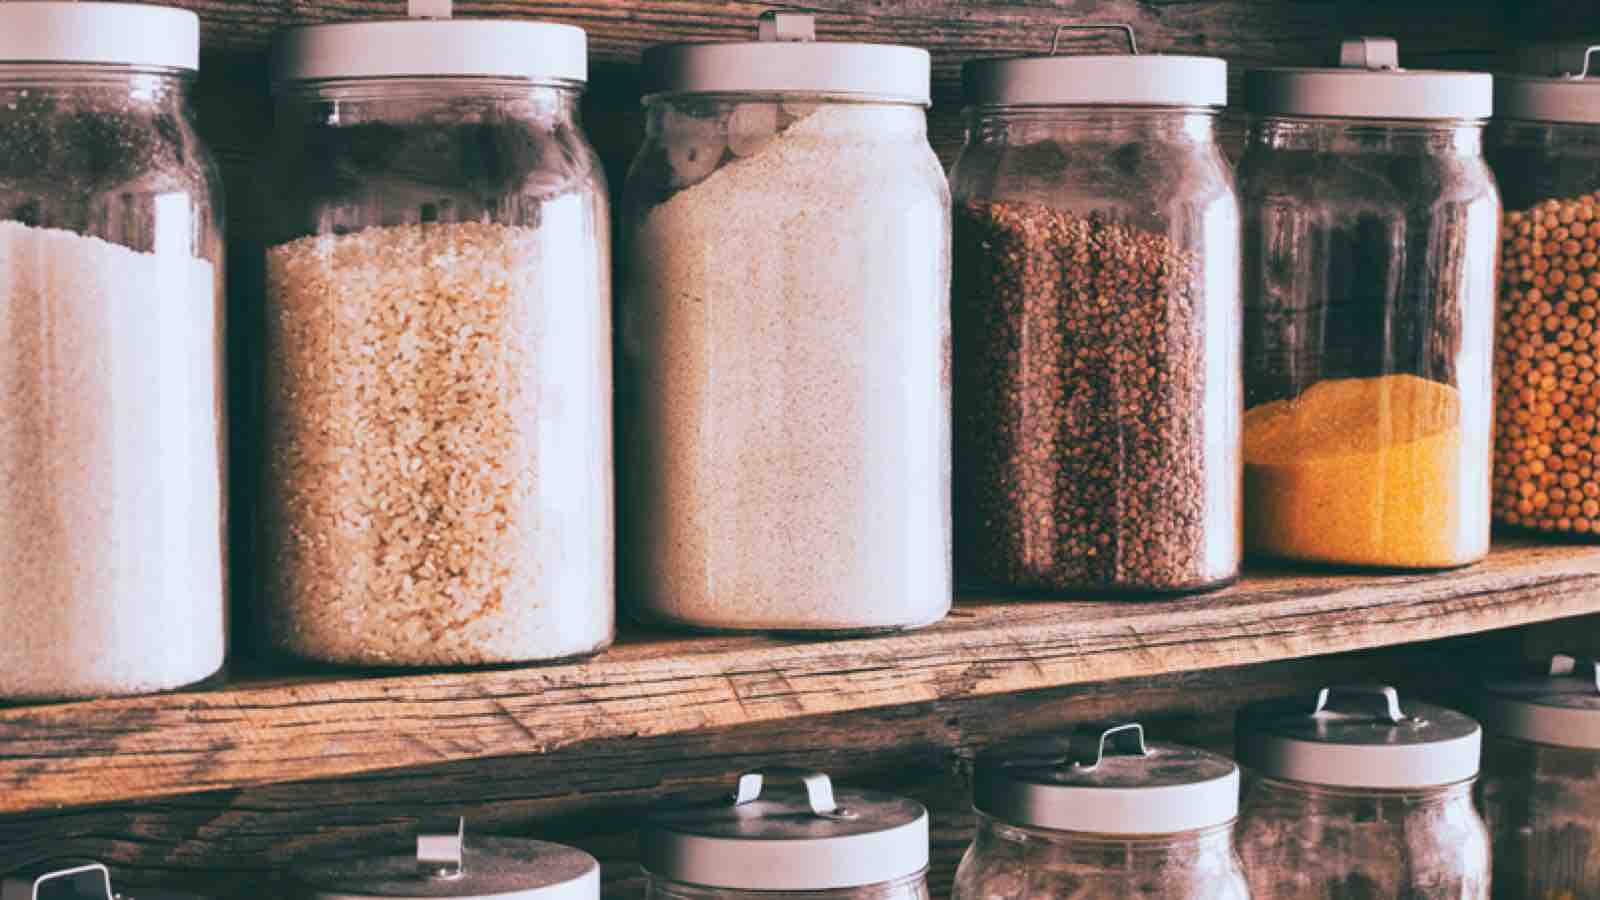 DIY Canned Food Storage  Diy pantry, Canned food storage, Diy spice rack